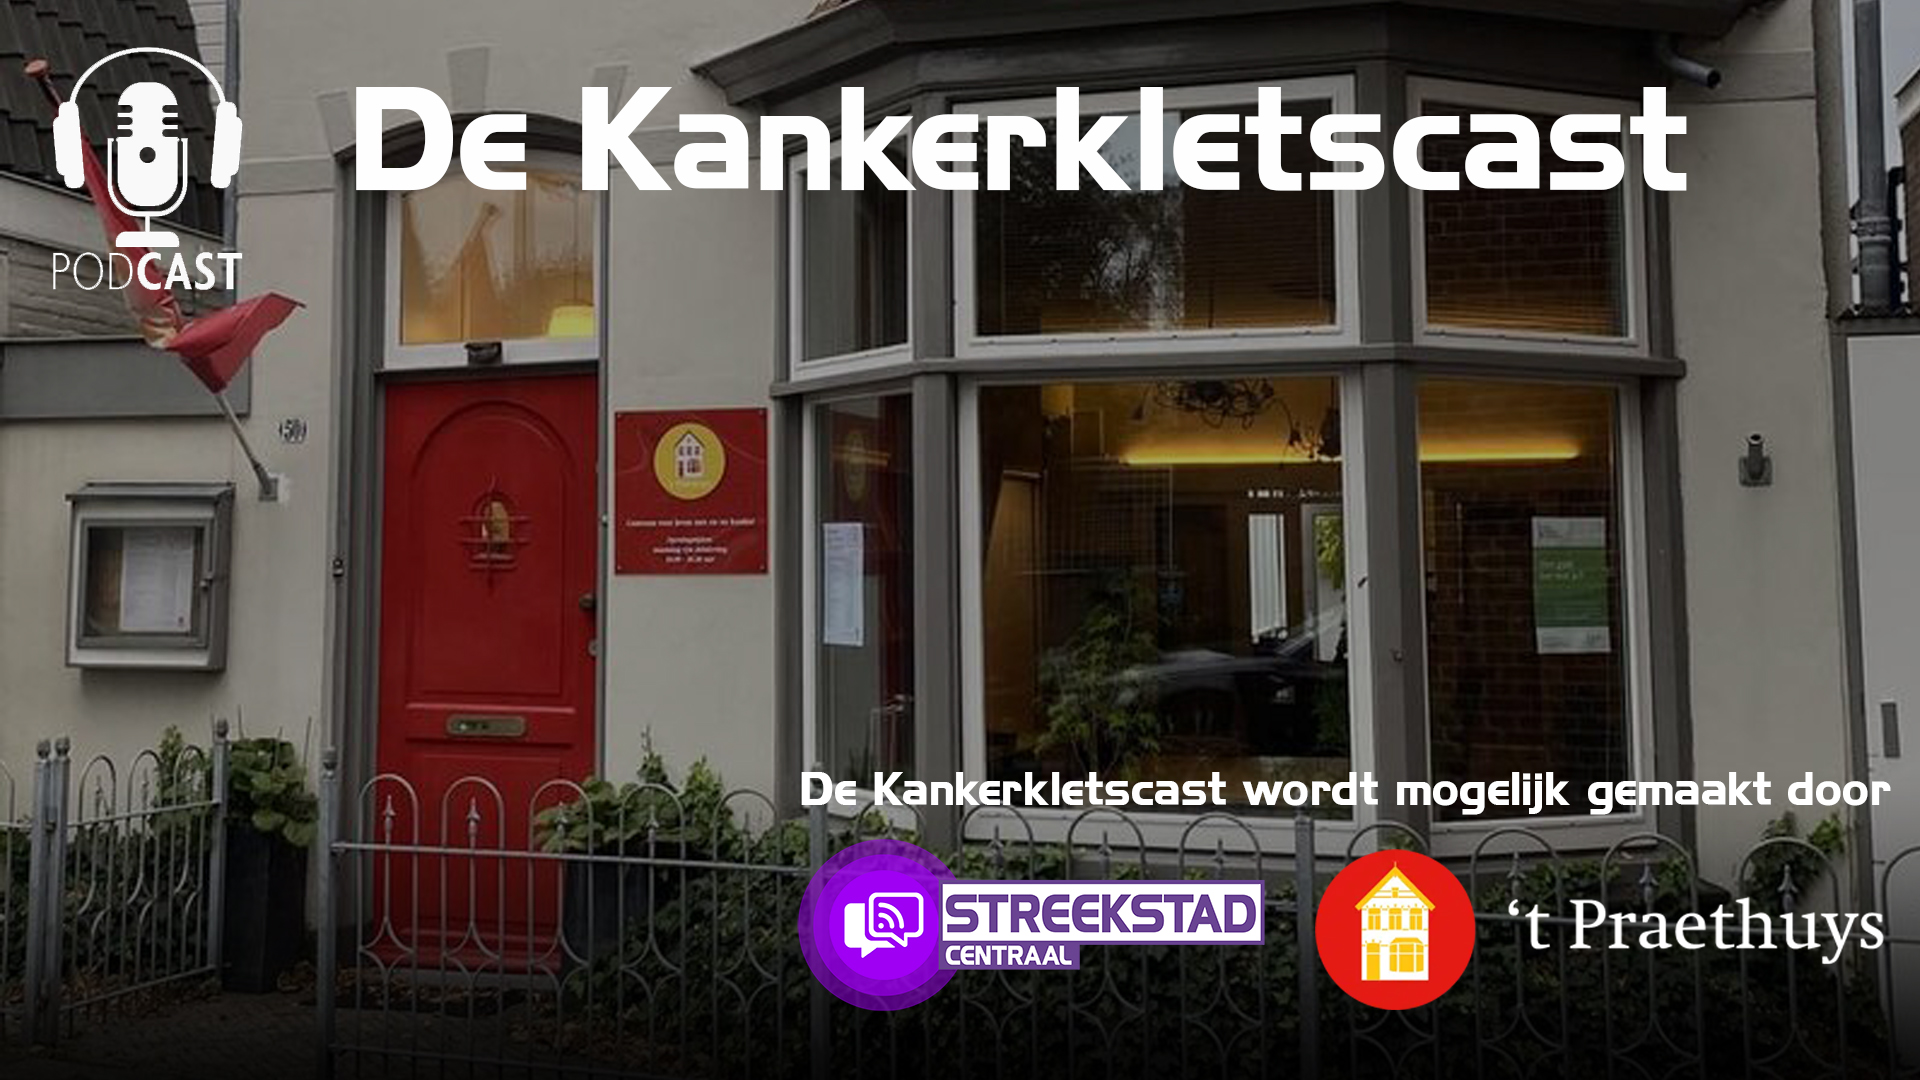 Jan van Leer aan het woord in De Kankerkletscast (S01A07)